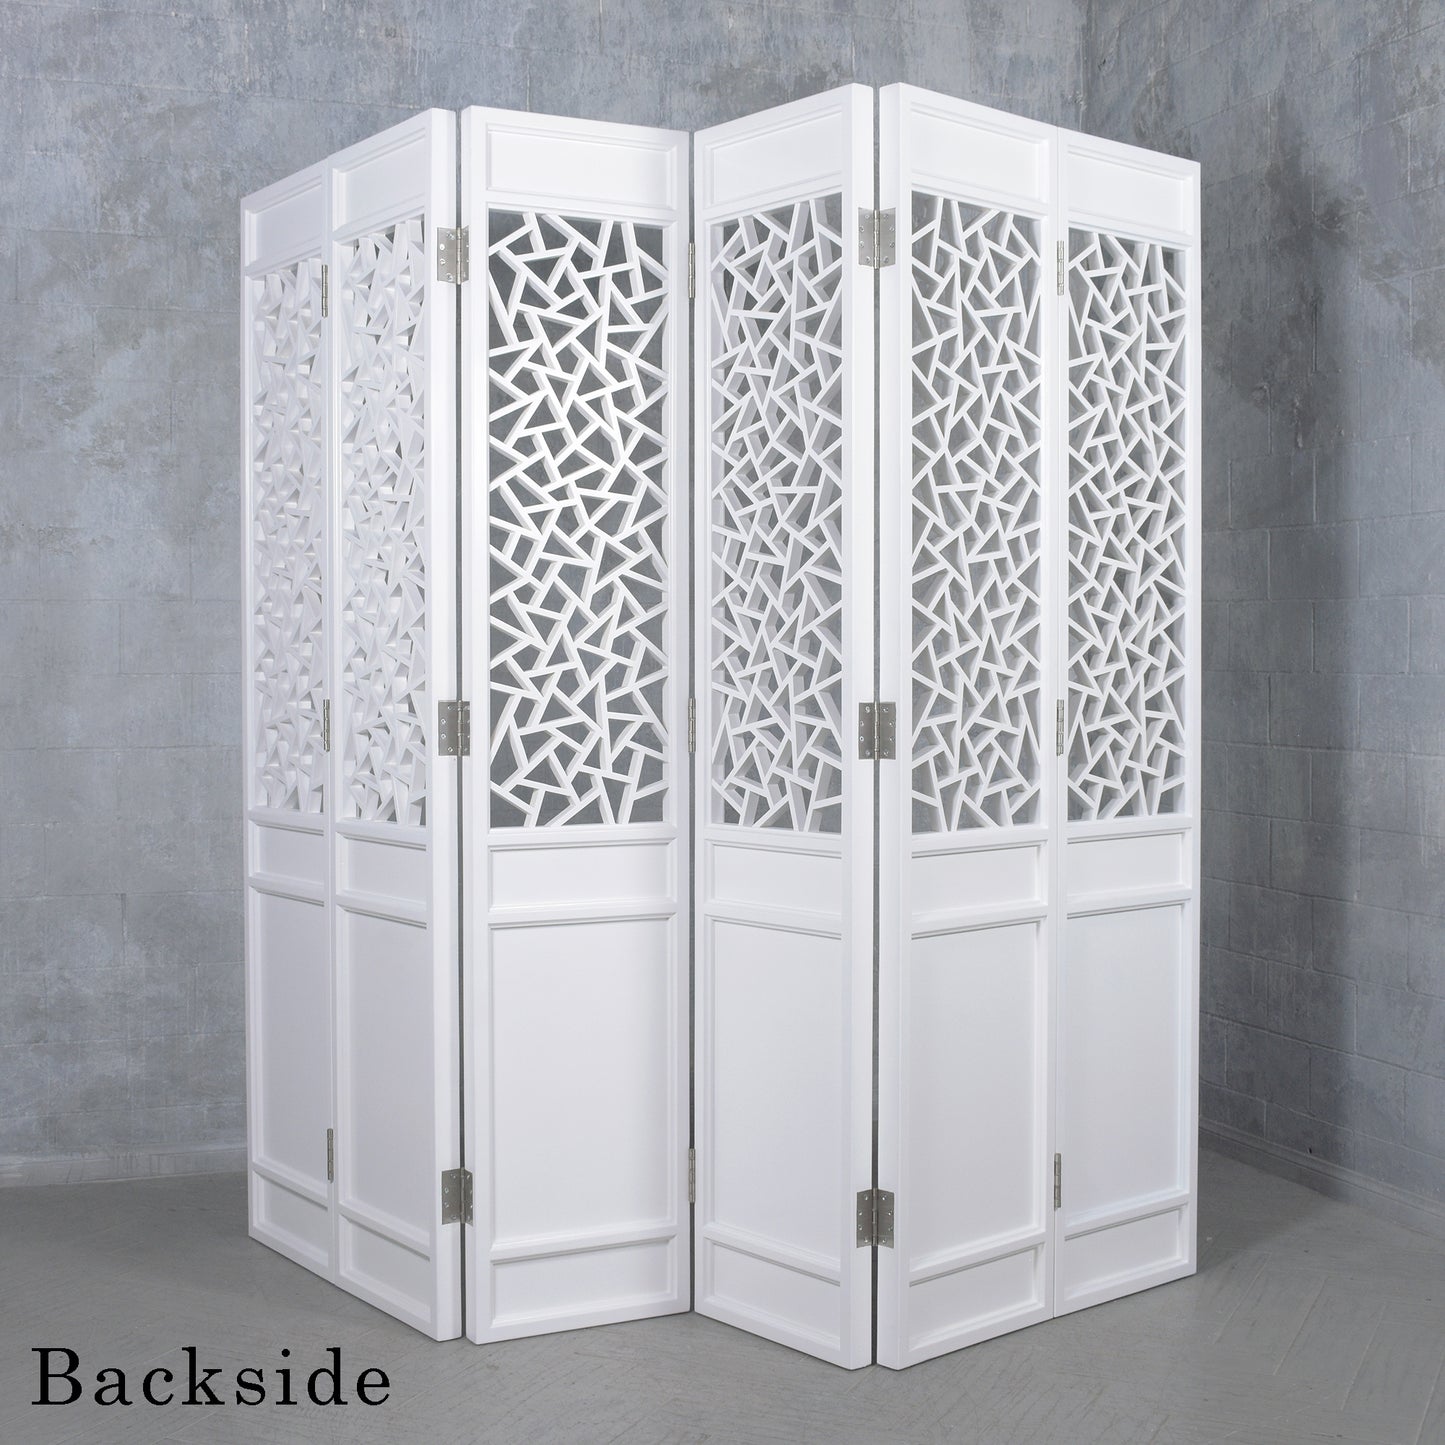 Vintage Solid Wood Room Divider with Carved Design - Elegant Off-White Six-Panel